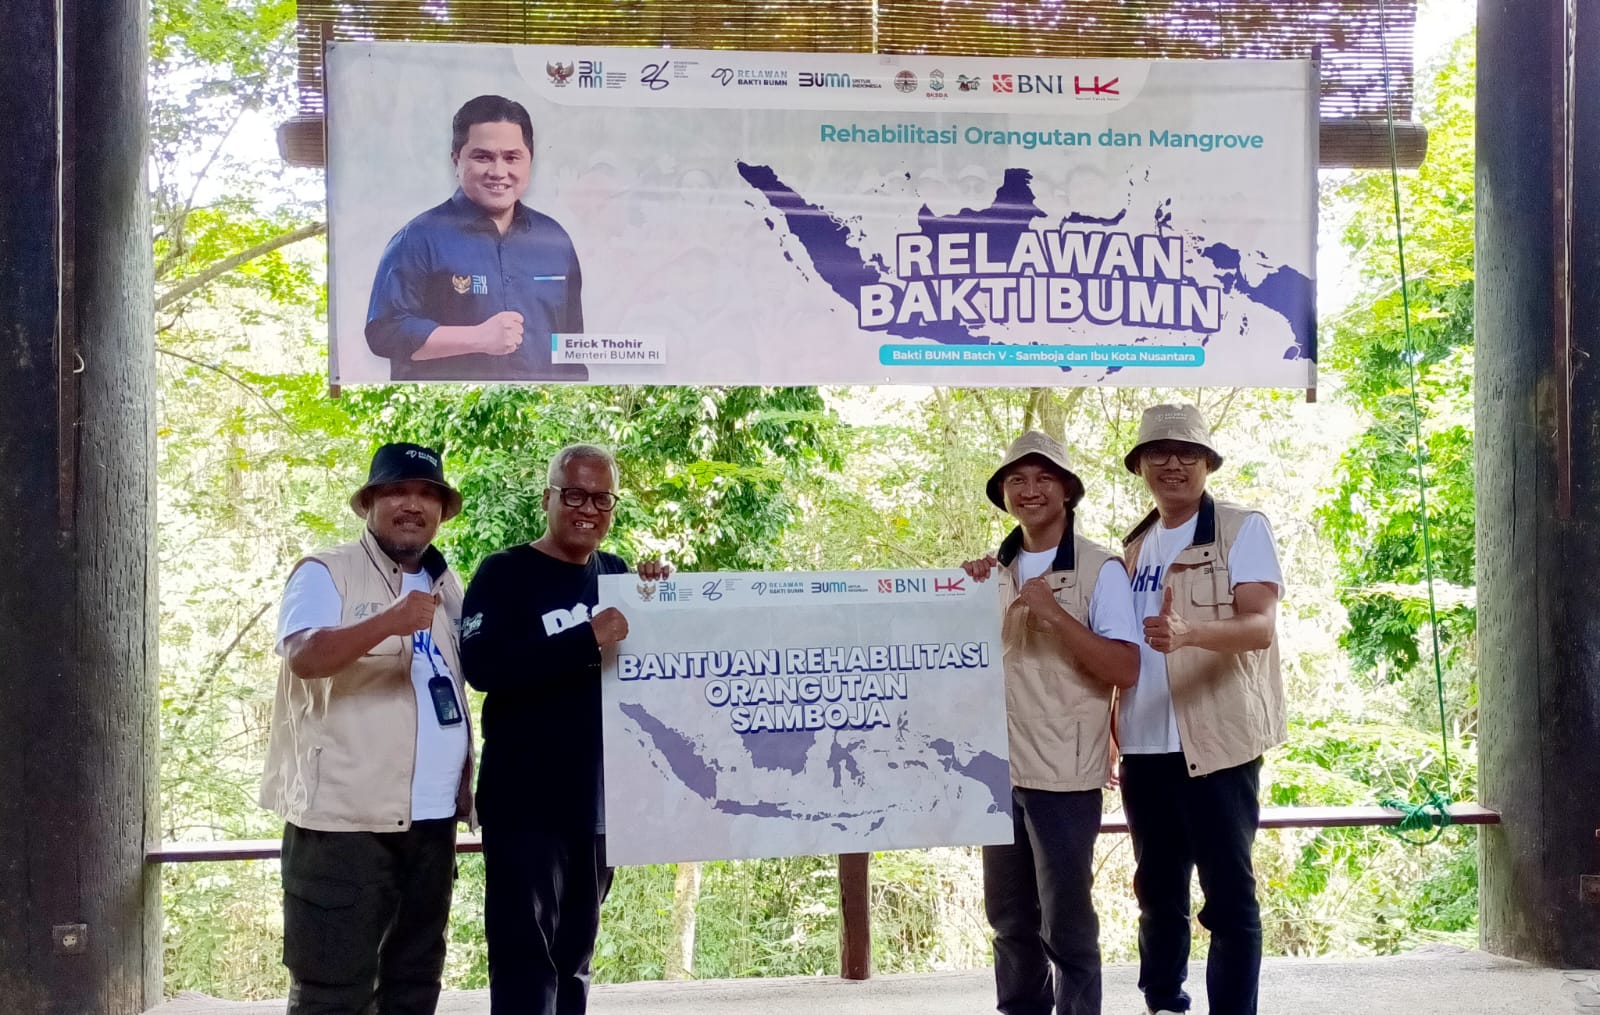 BNI Antarkan Relawan Bakti BUMN Batch V ke Samboja dan IKN, Rehabilitasi Orangutan dan Mangrove